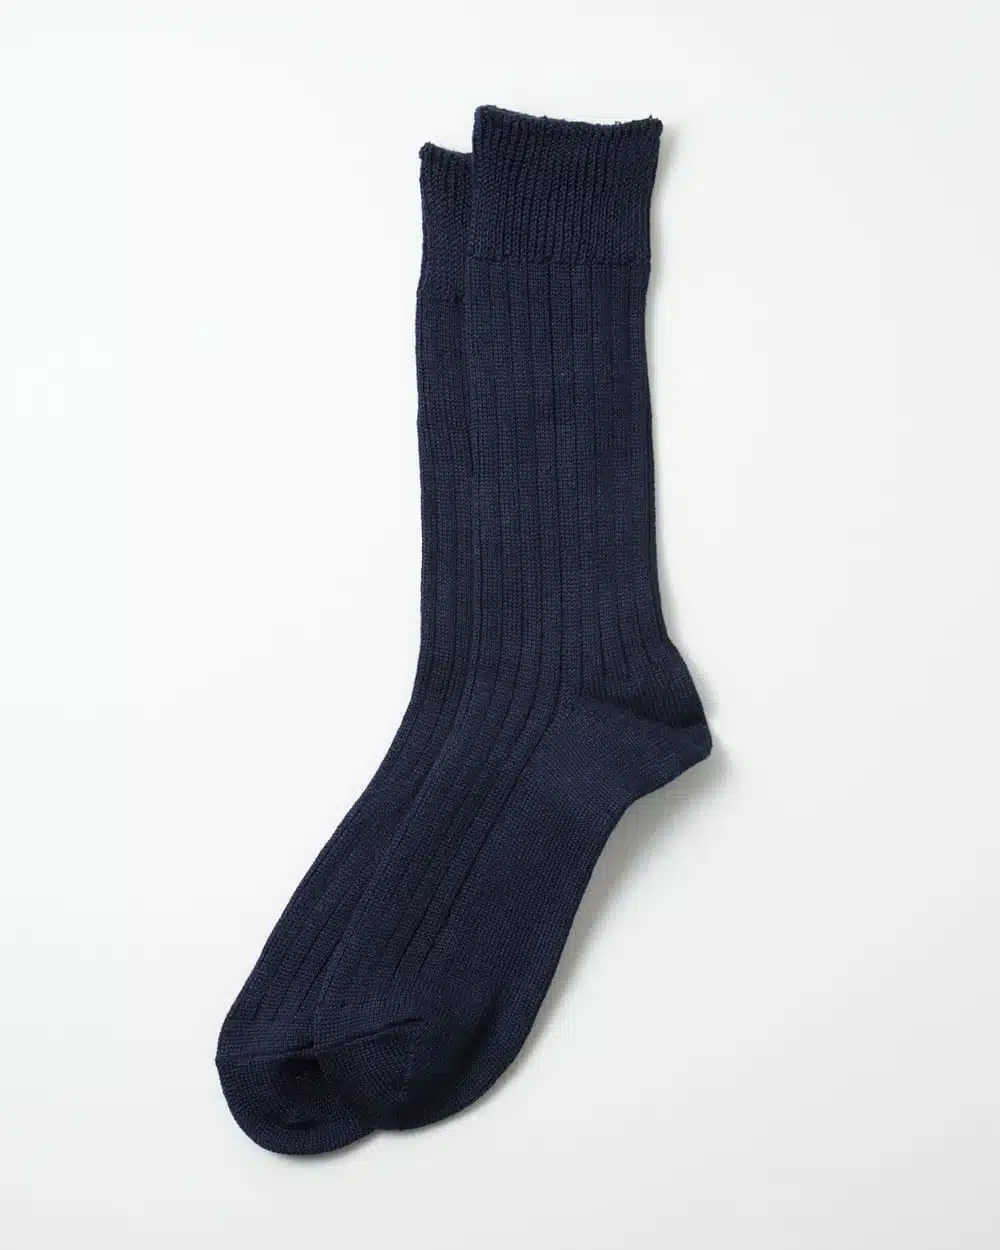 RoToTo Linen Cotton Ribbed Crew Socks - Navy